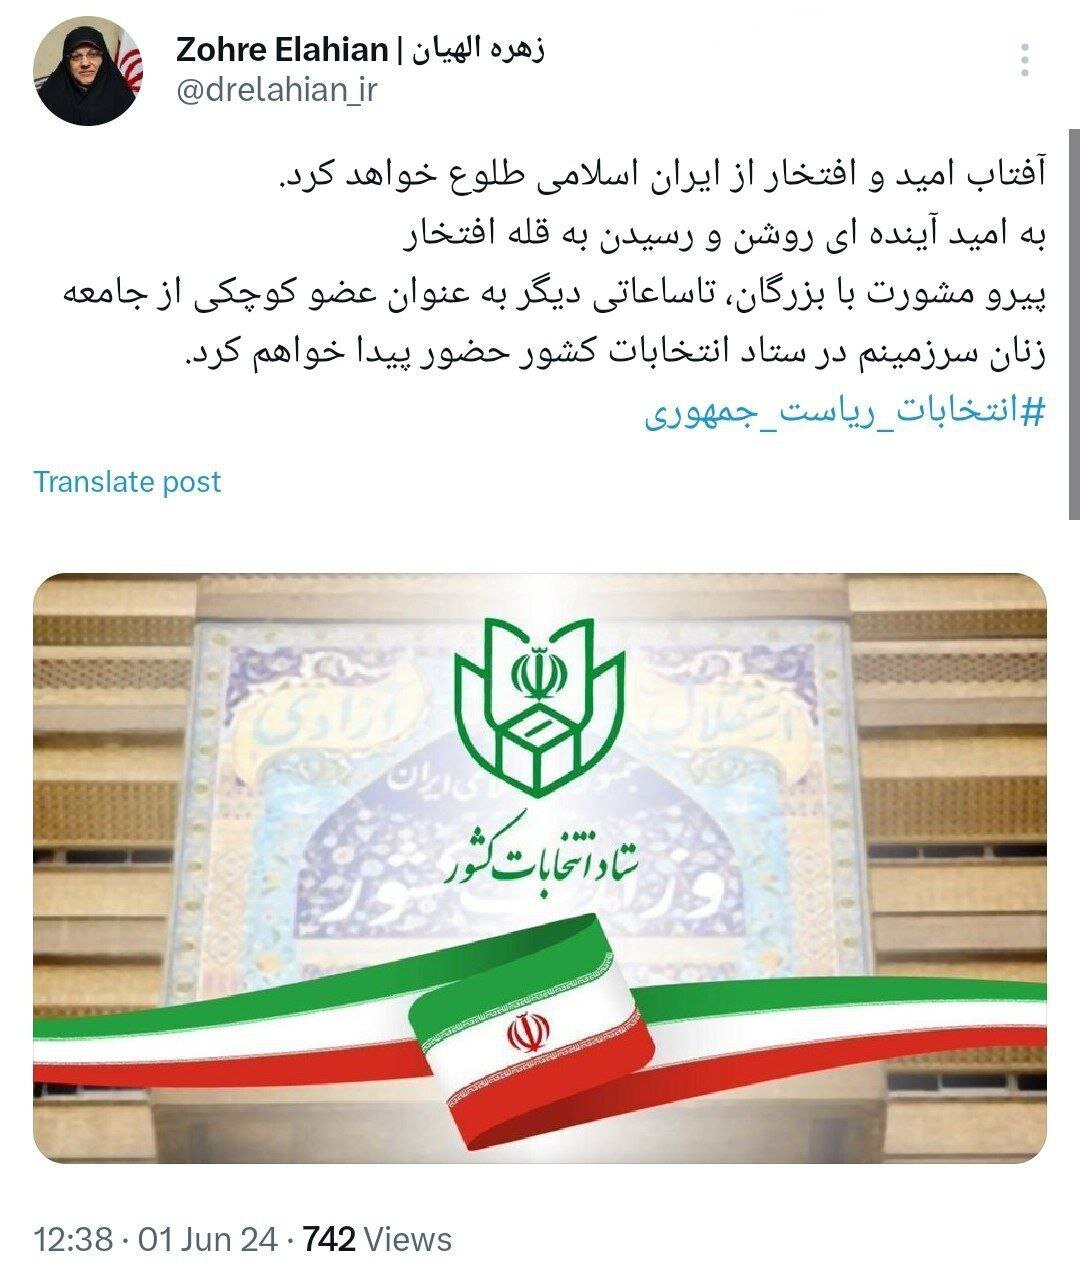 این کاندیدای زن برای ایران تحلیلات مجلس کیست؟  تا چند ساعت دیگر به وزارت کشور می روم